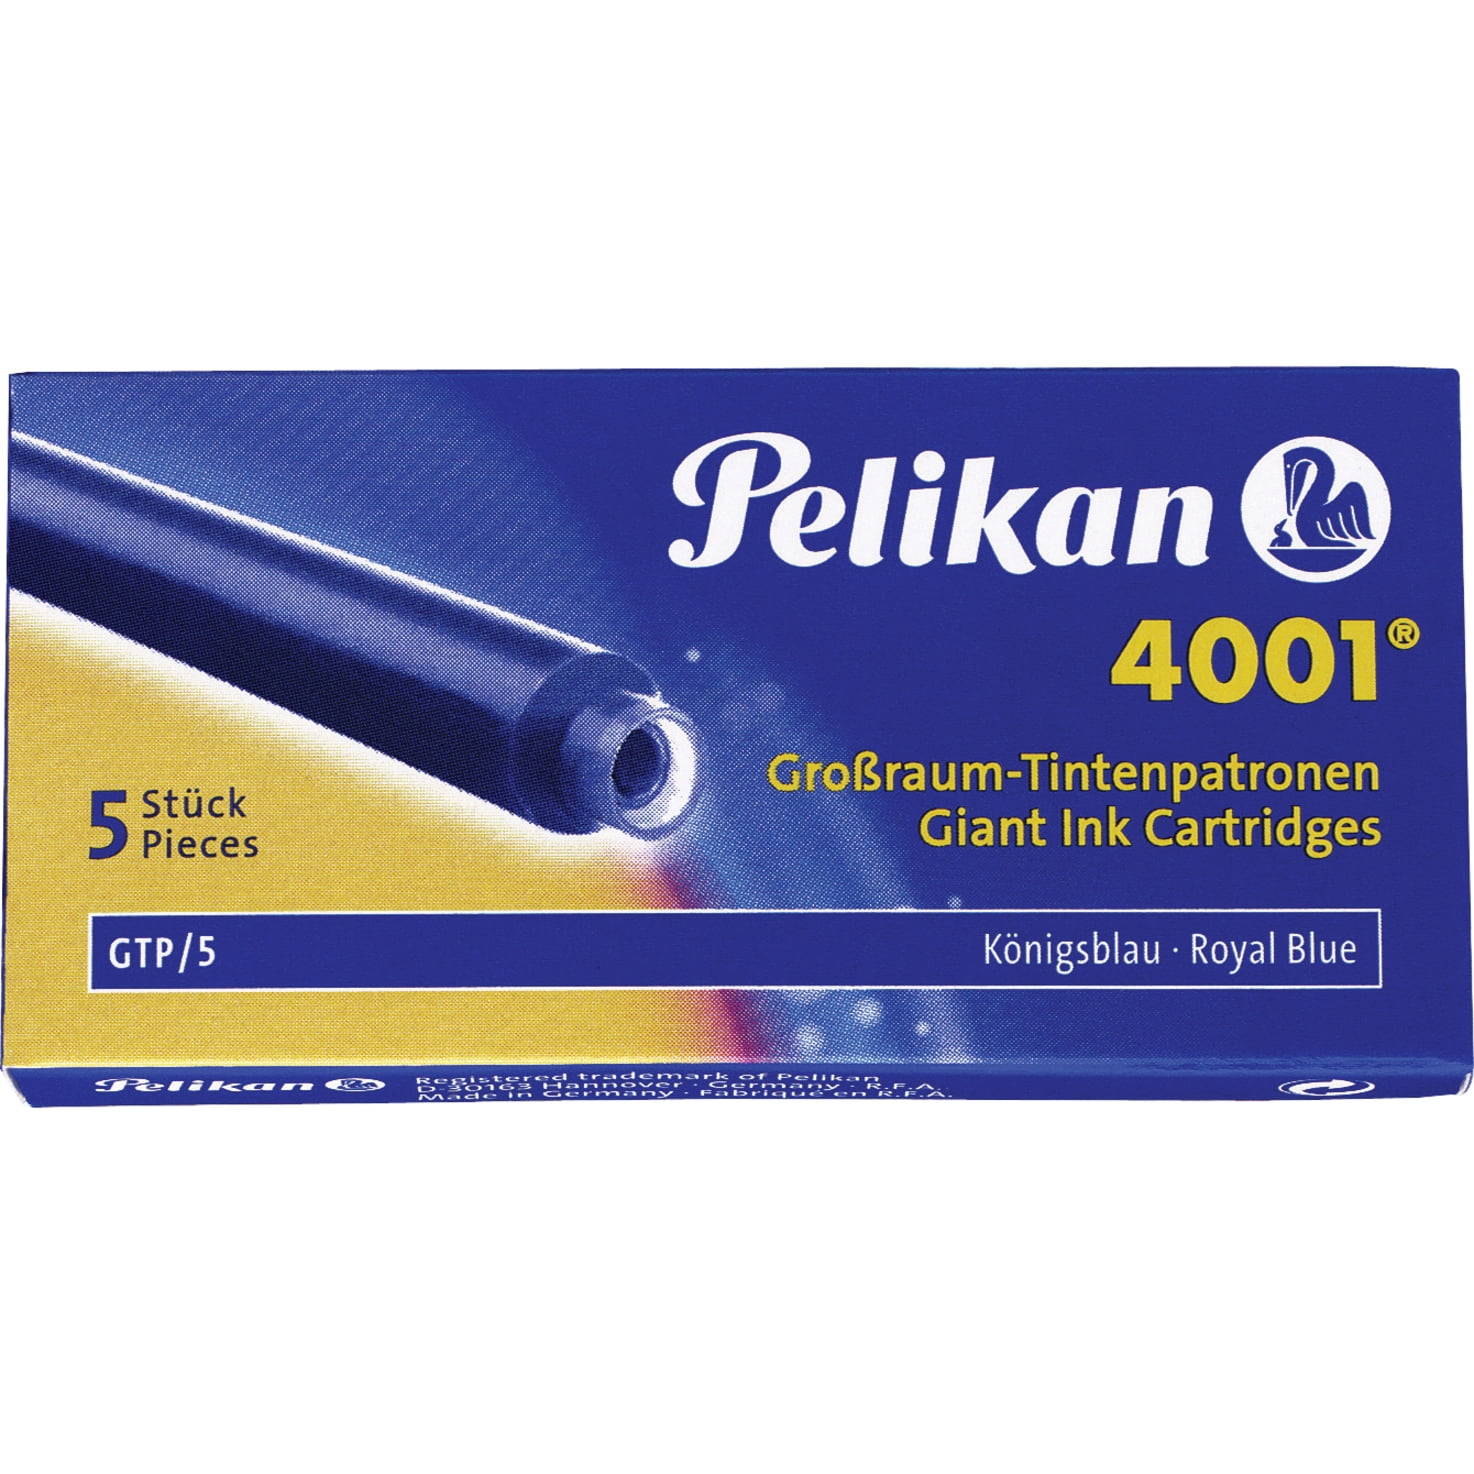 Canberra moeilijk huren Pelikan 4001 GTP/5 Giant Ink Cartridge - Walmart.com